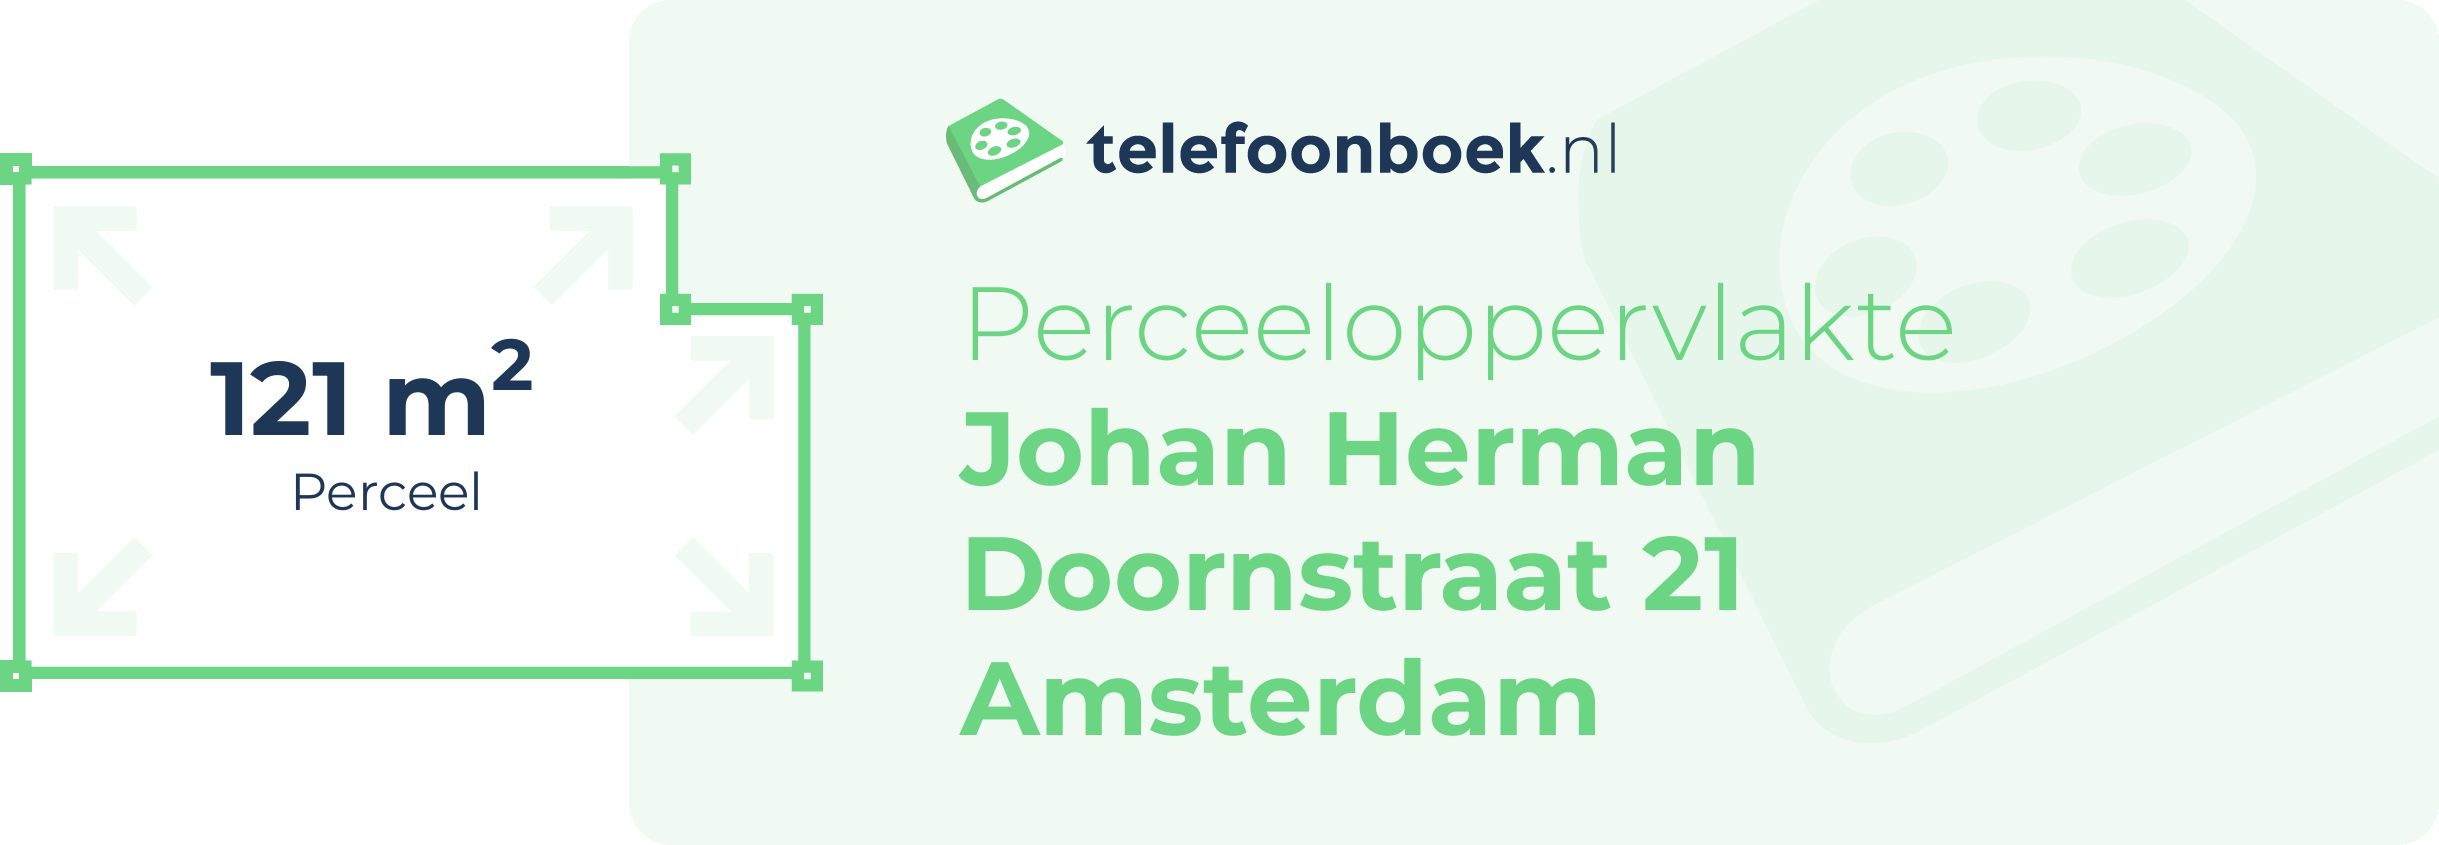 Perceeloppervlakte Johan Herman Doornstraat 21 Amsterdam